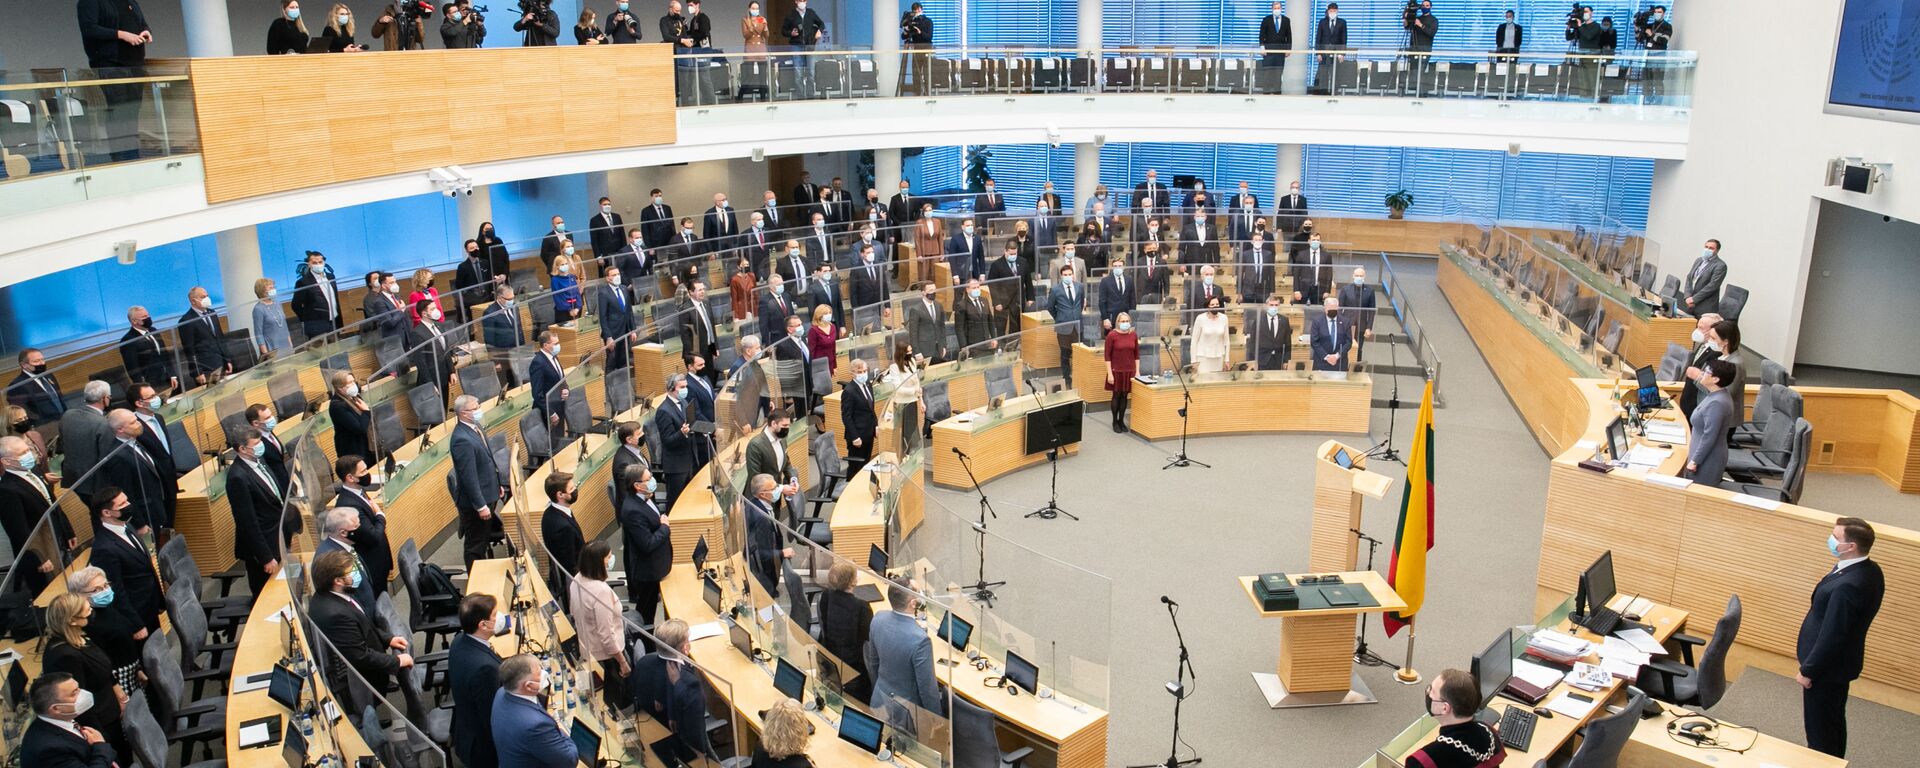 Первое заседание весенней сессии Сейма Литвы, 10 марта 2021 - Sputnik Литва, 1920, 13.05.2021